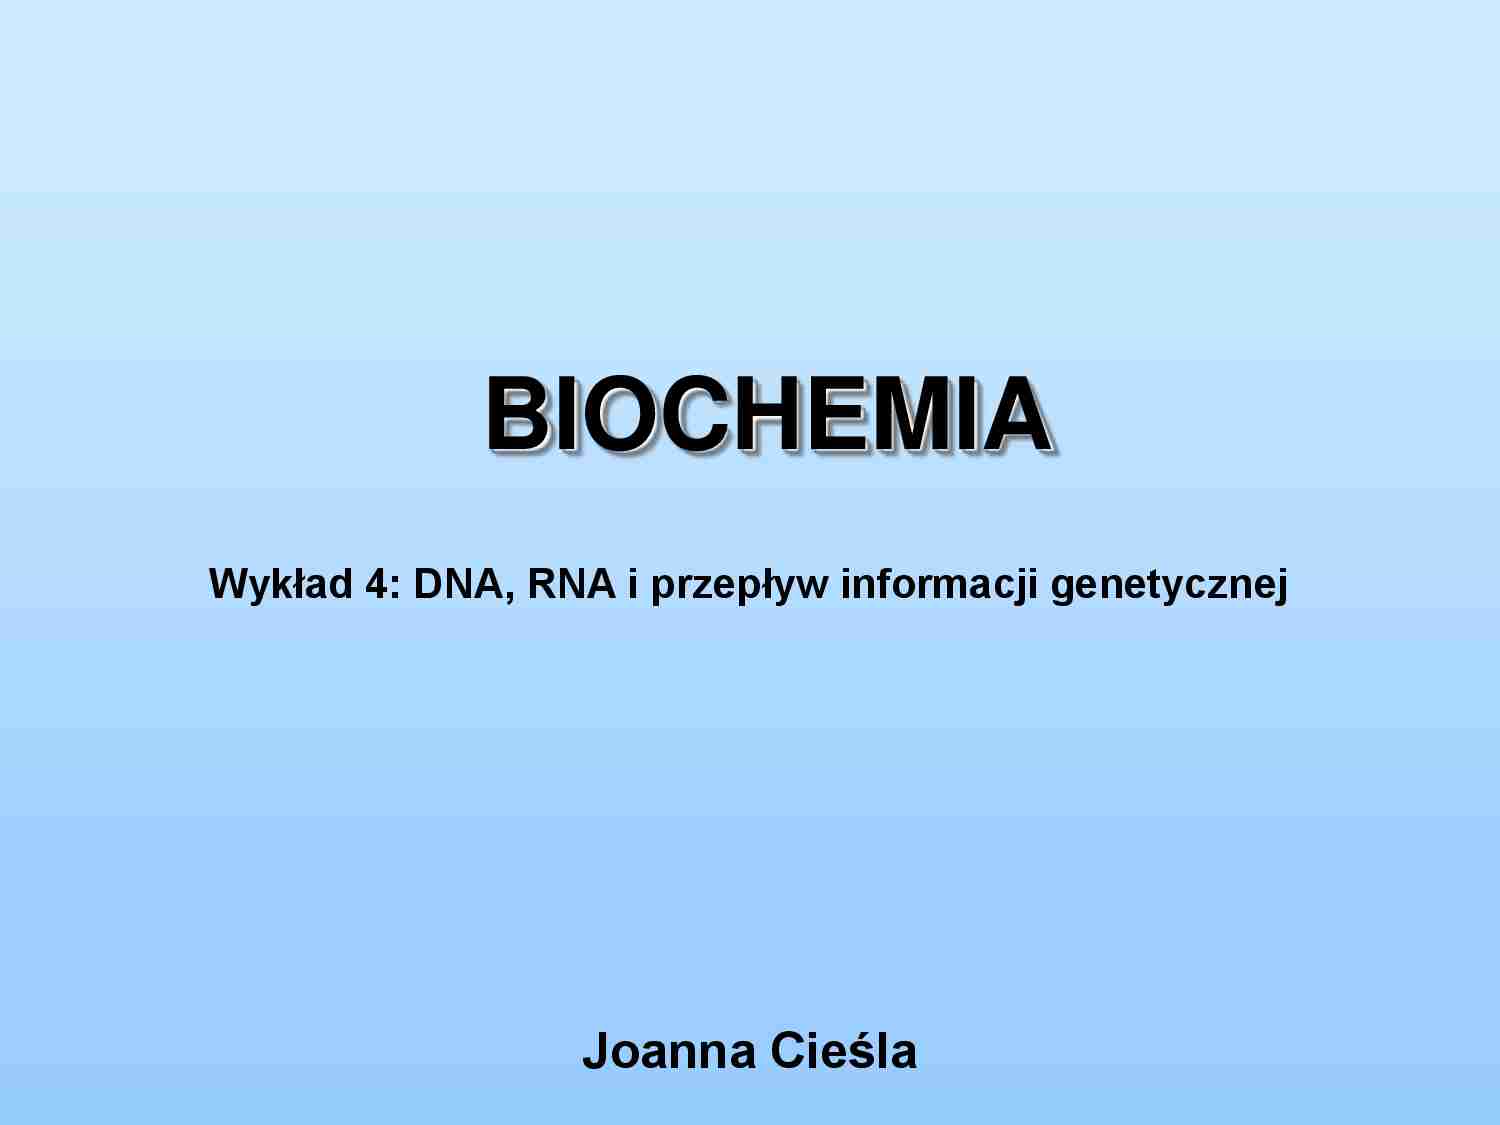 DNA, RNA i przepływ informacji genetycznej-wykład - strona 1